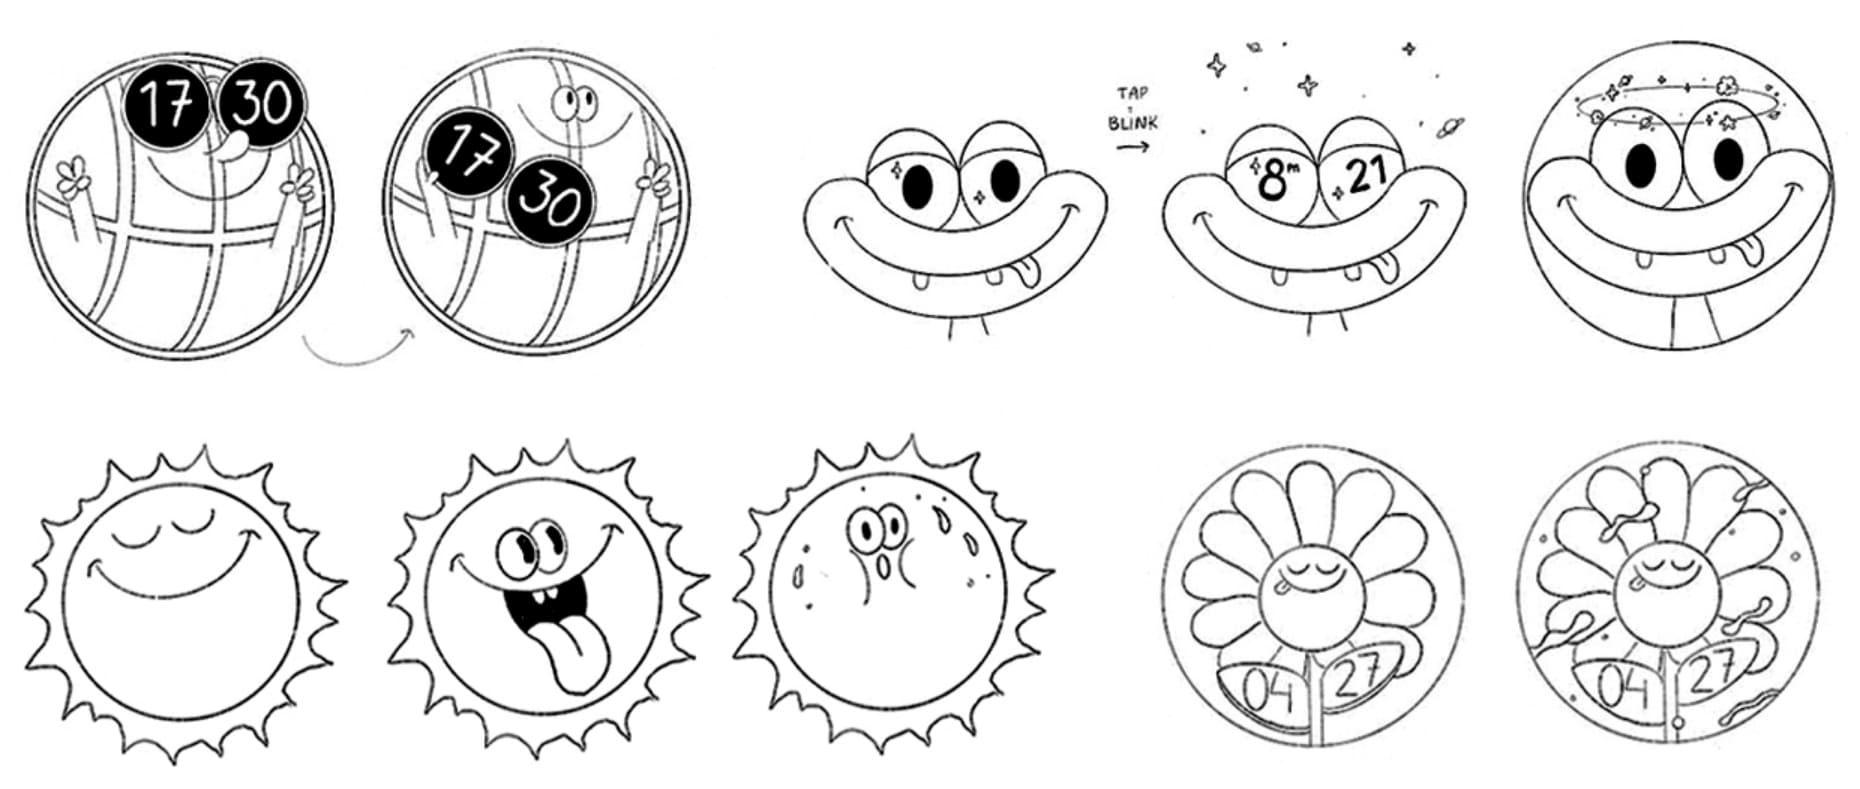 워치 페이스의  「Funny Faces」 의 초안 디자인 스케치 4개의 이미지 입니다.